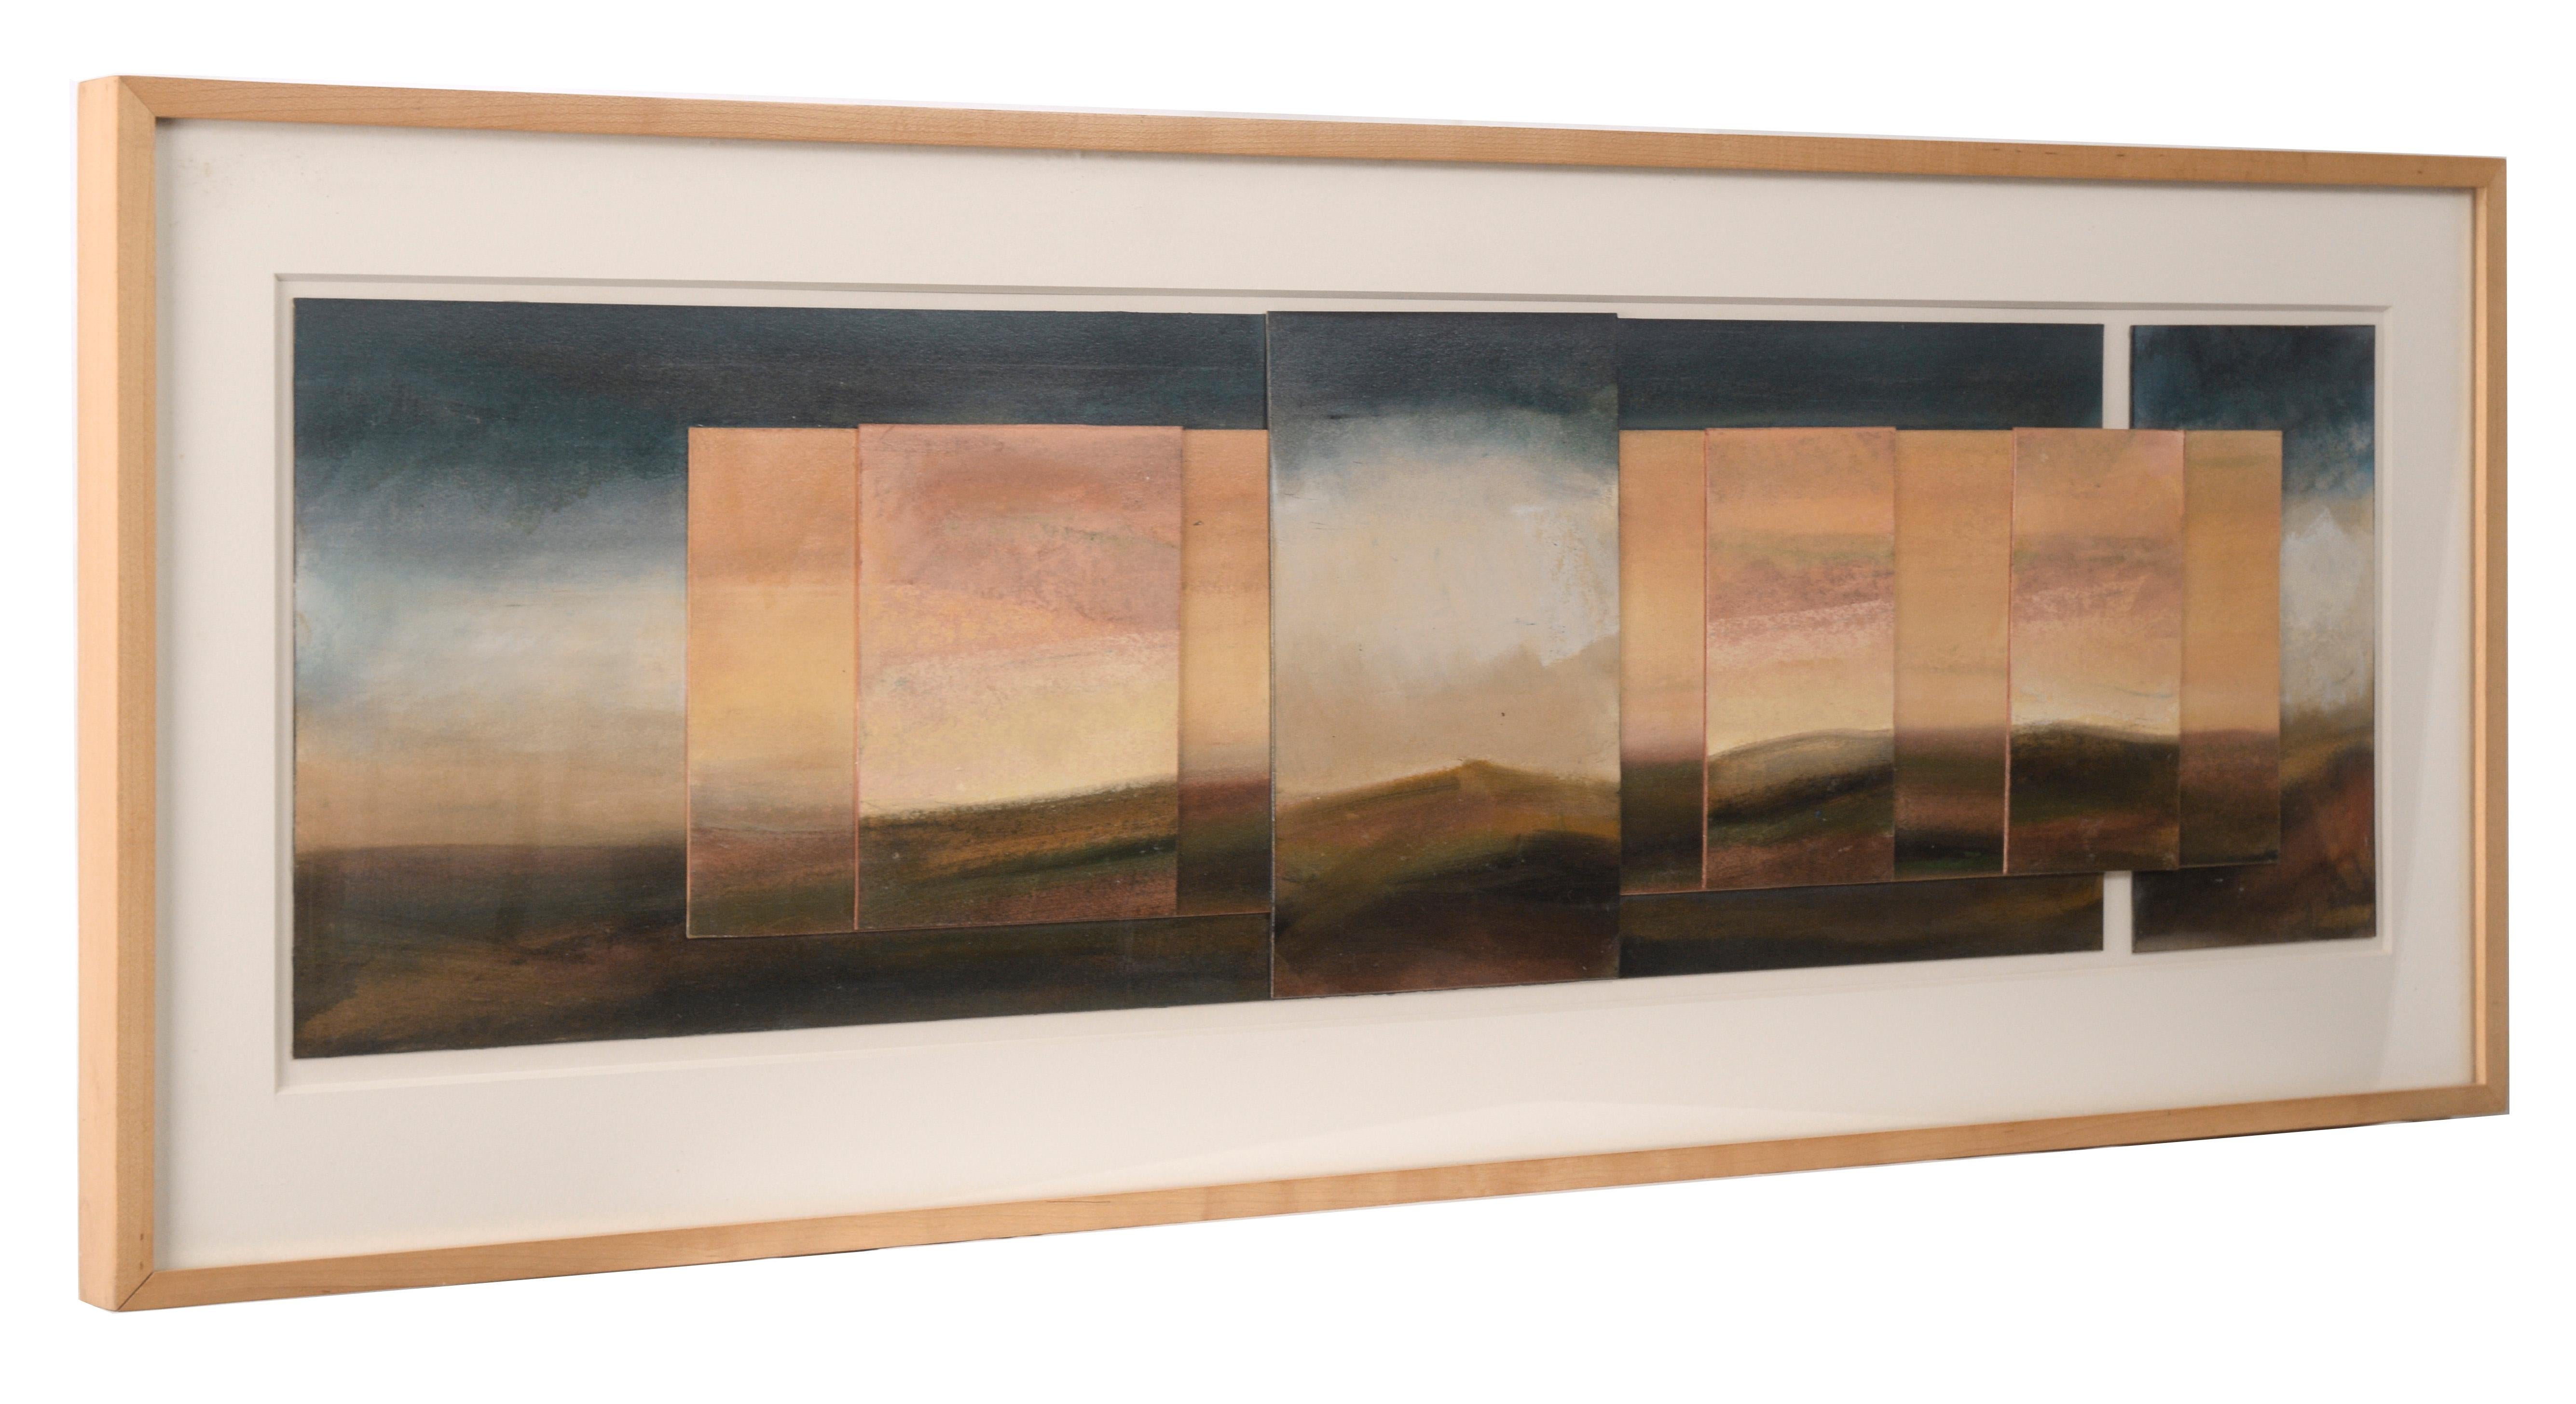 Abstracted landscape by Derrik Van Nimwegen (American, b. 1969). Moody and expressive, the 